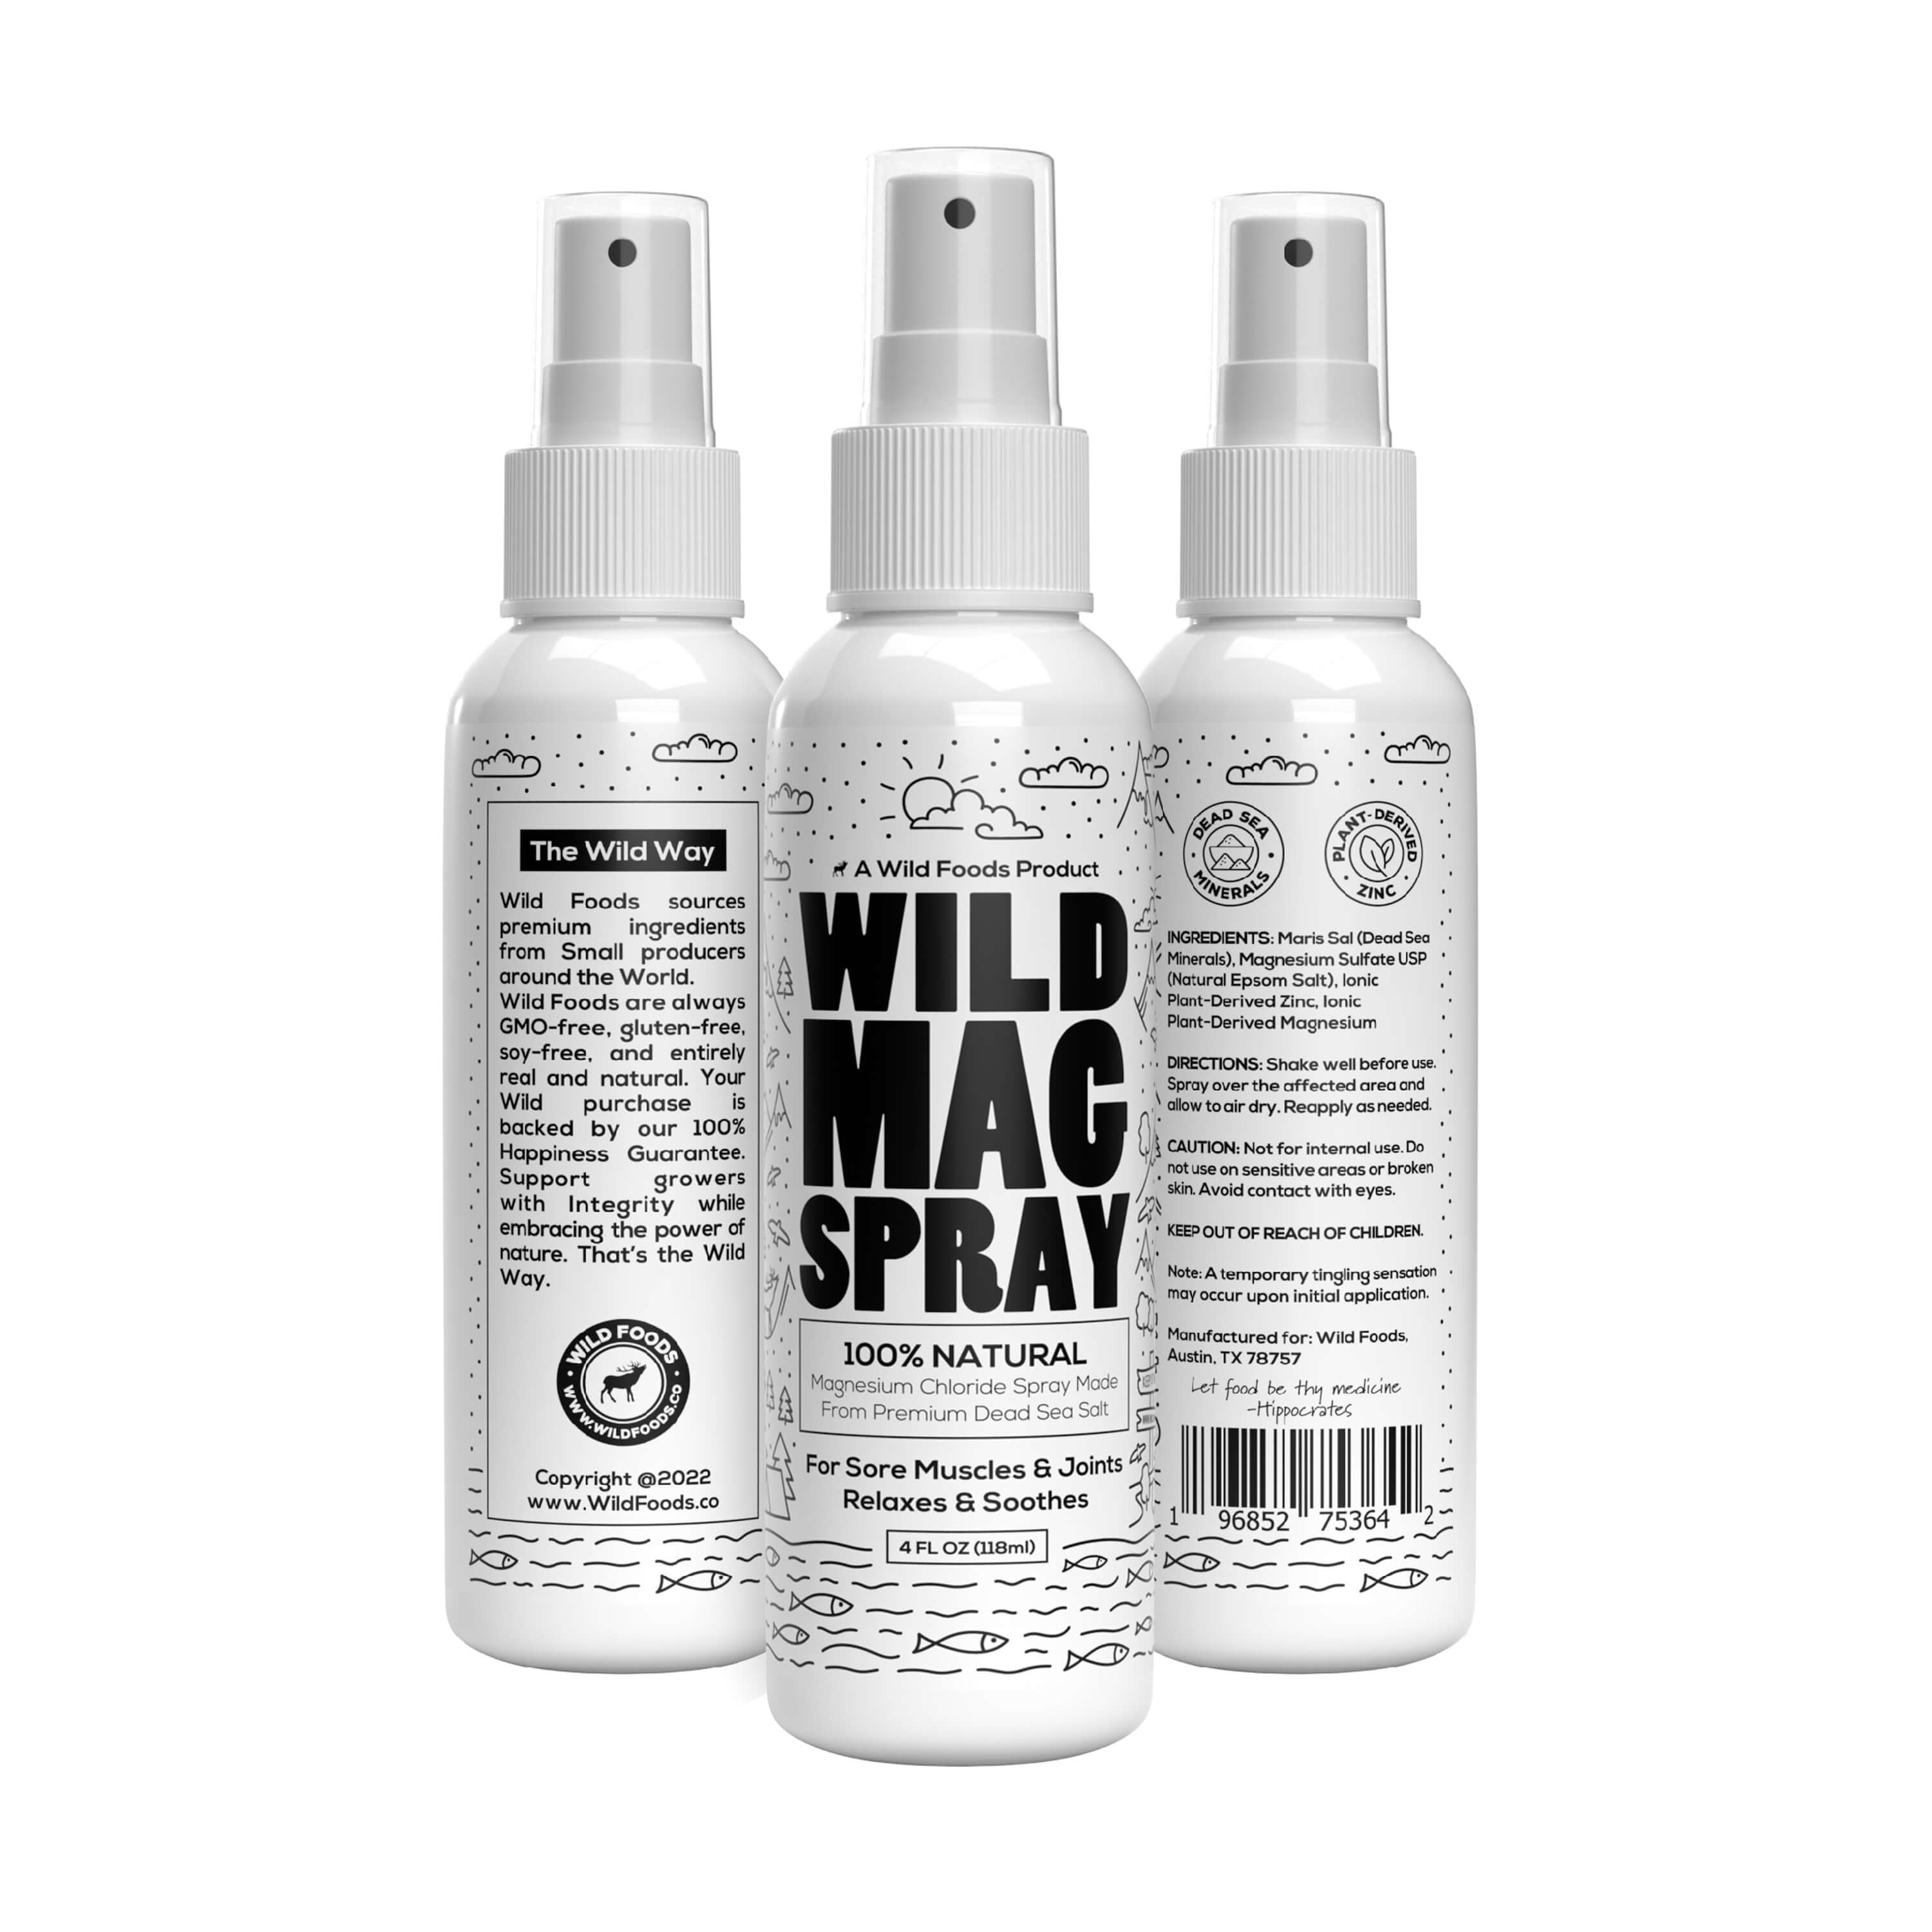 B Wild Glitter Spray